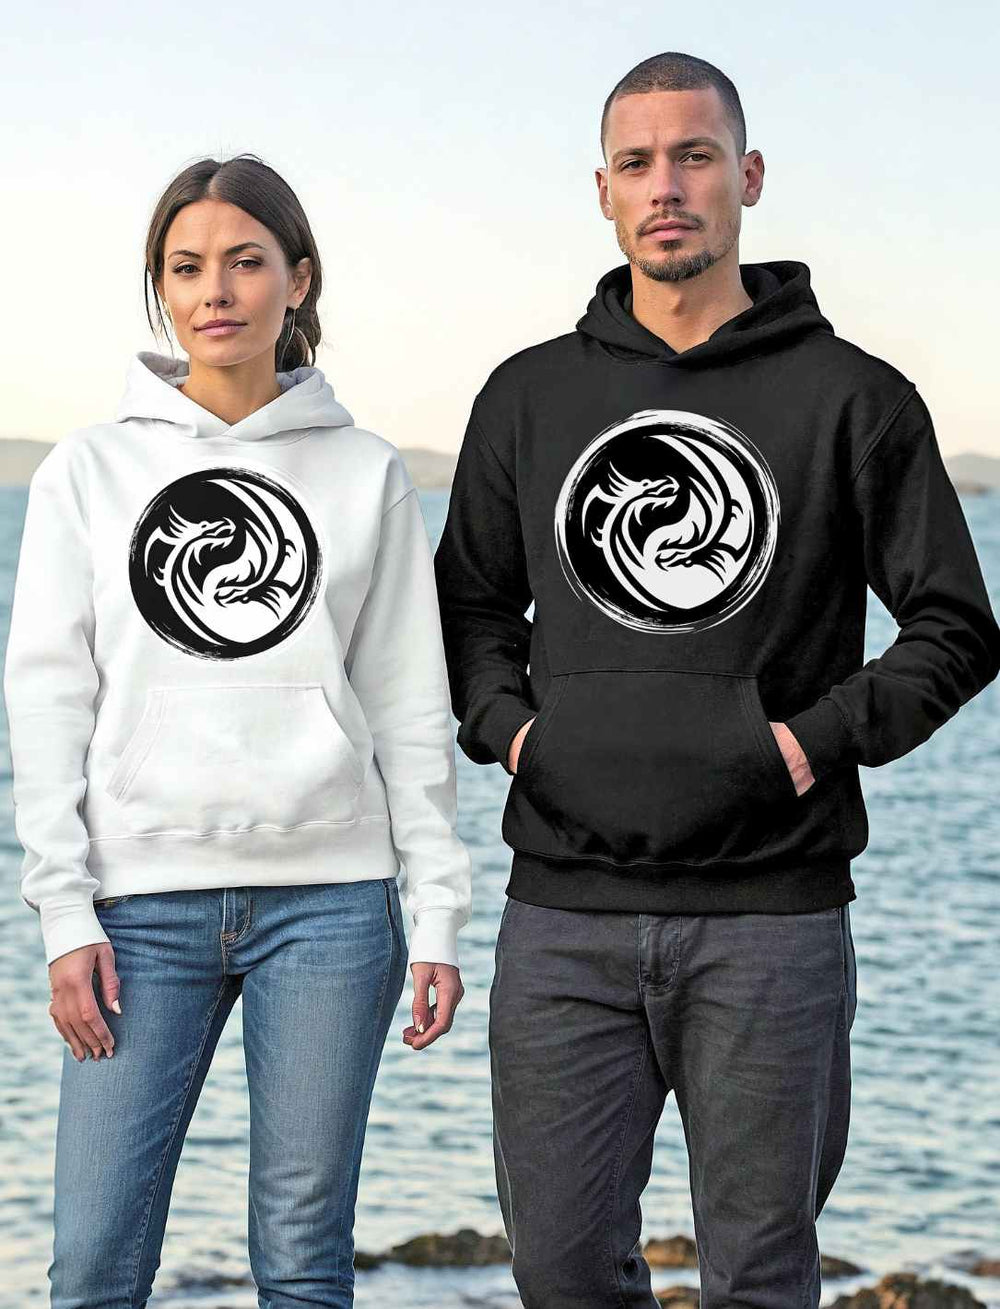 Ein Paar trägt 'Drachensiegel des Gleichgewichts' Unisex Hoodies in Weiß und Schwarz am Ufer, das Design zeigt ein eindrucksvolles Yin-Yang-Drachenmotiv.